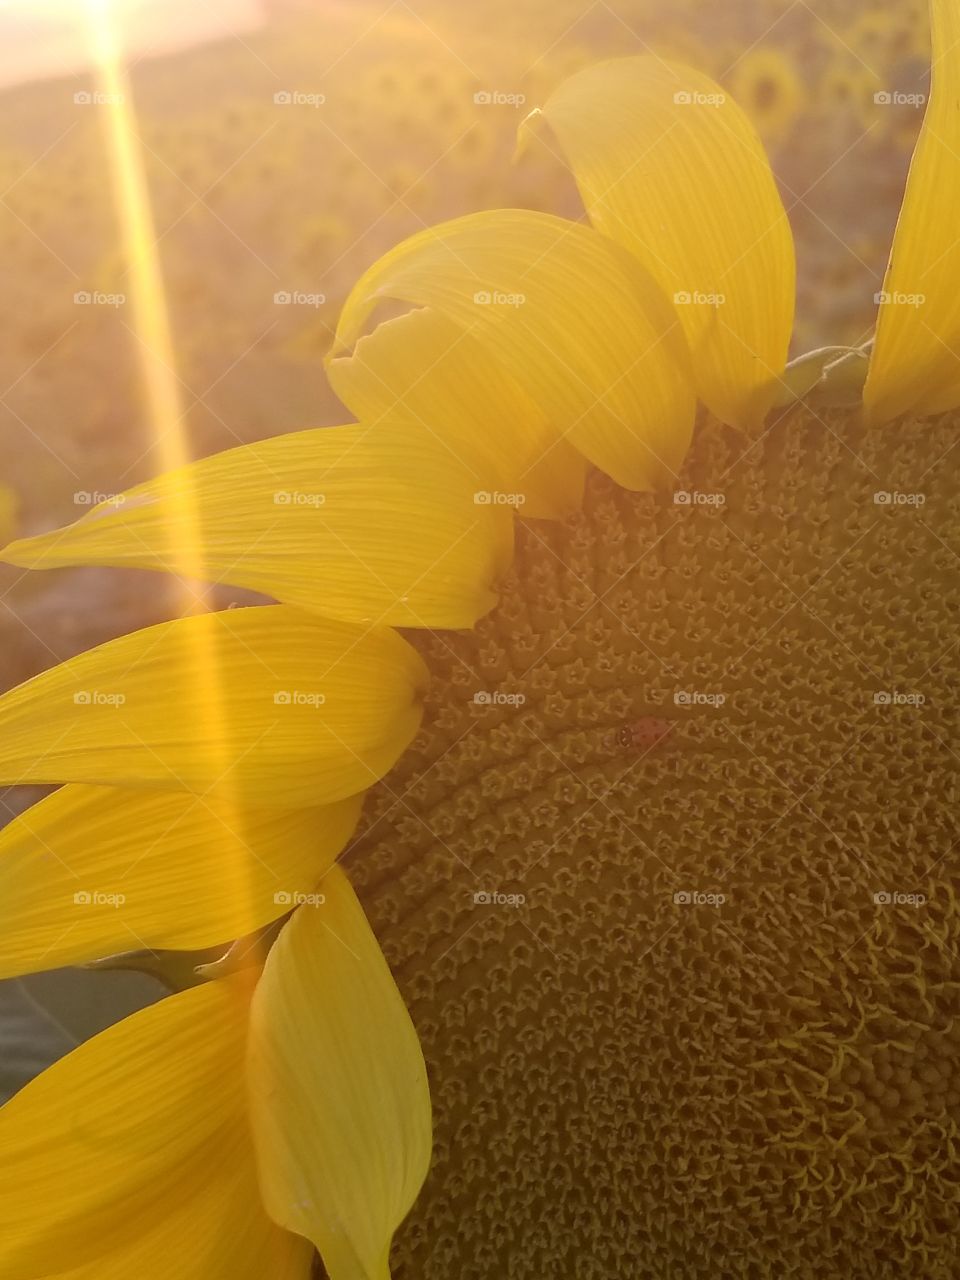 sunflower with ladybug